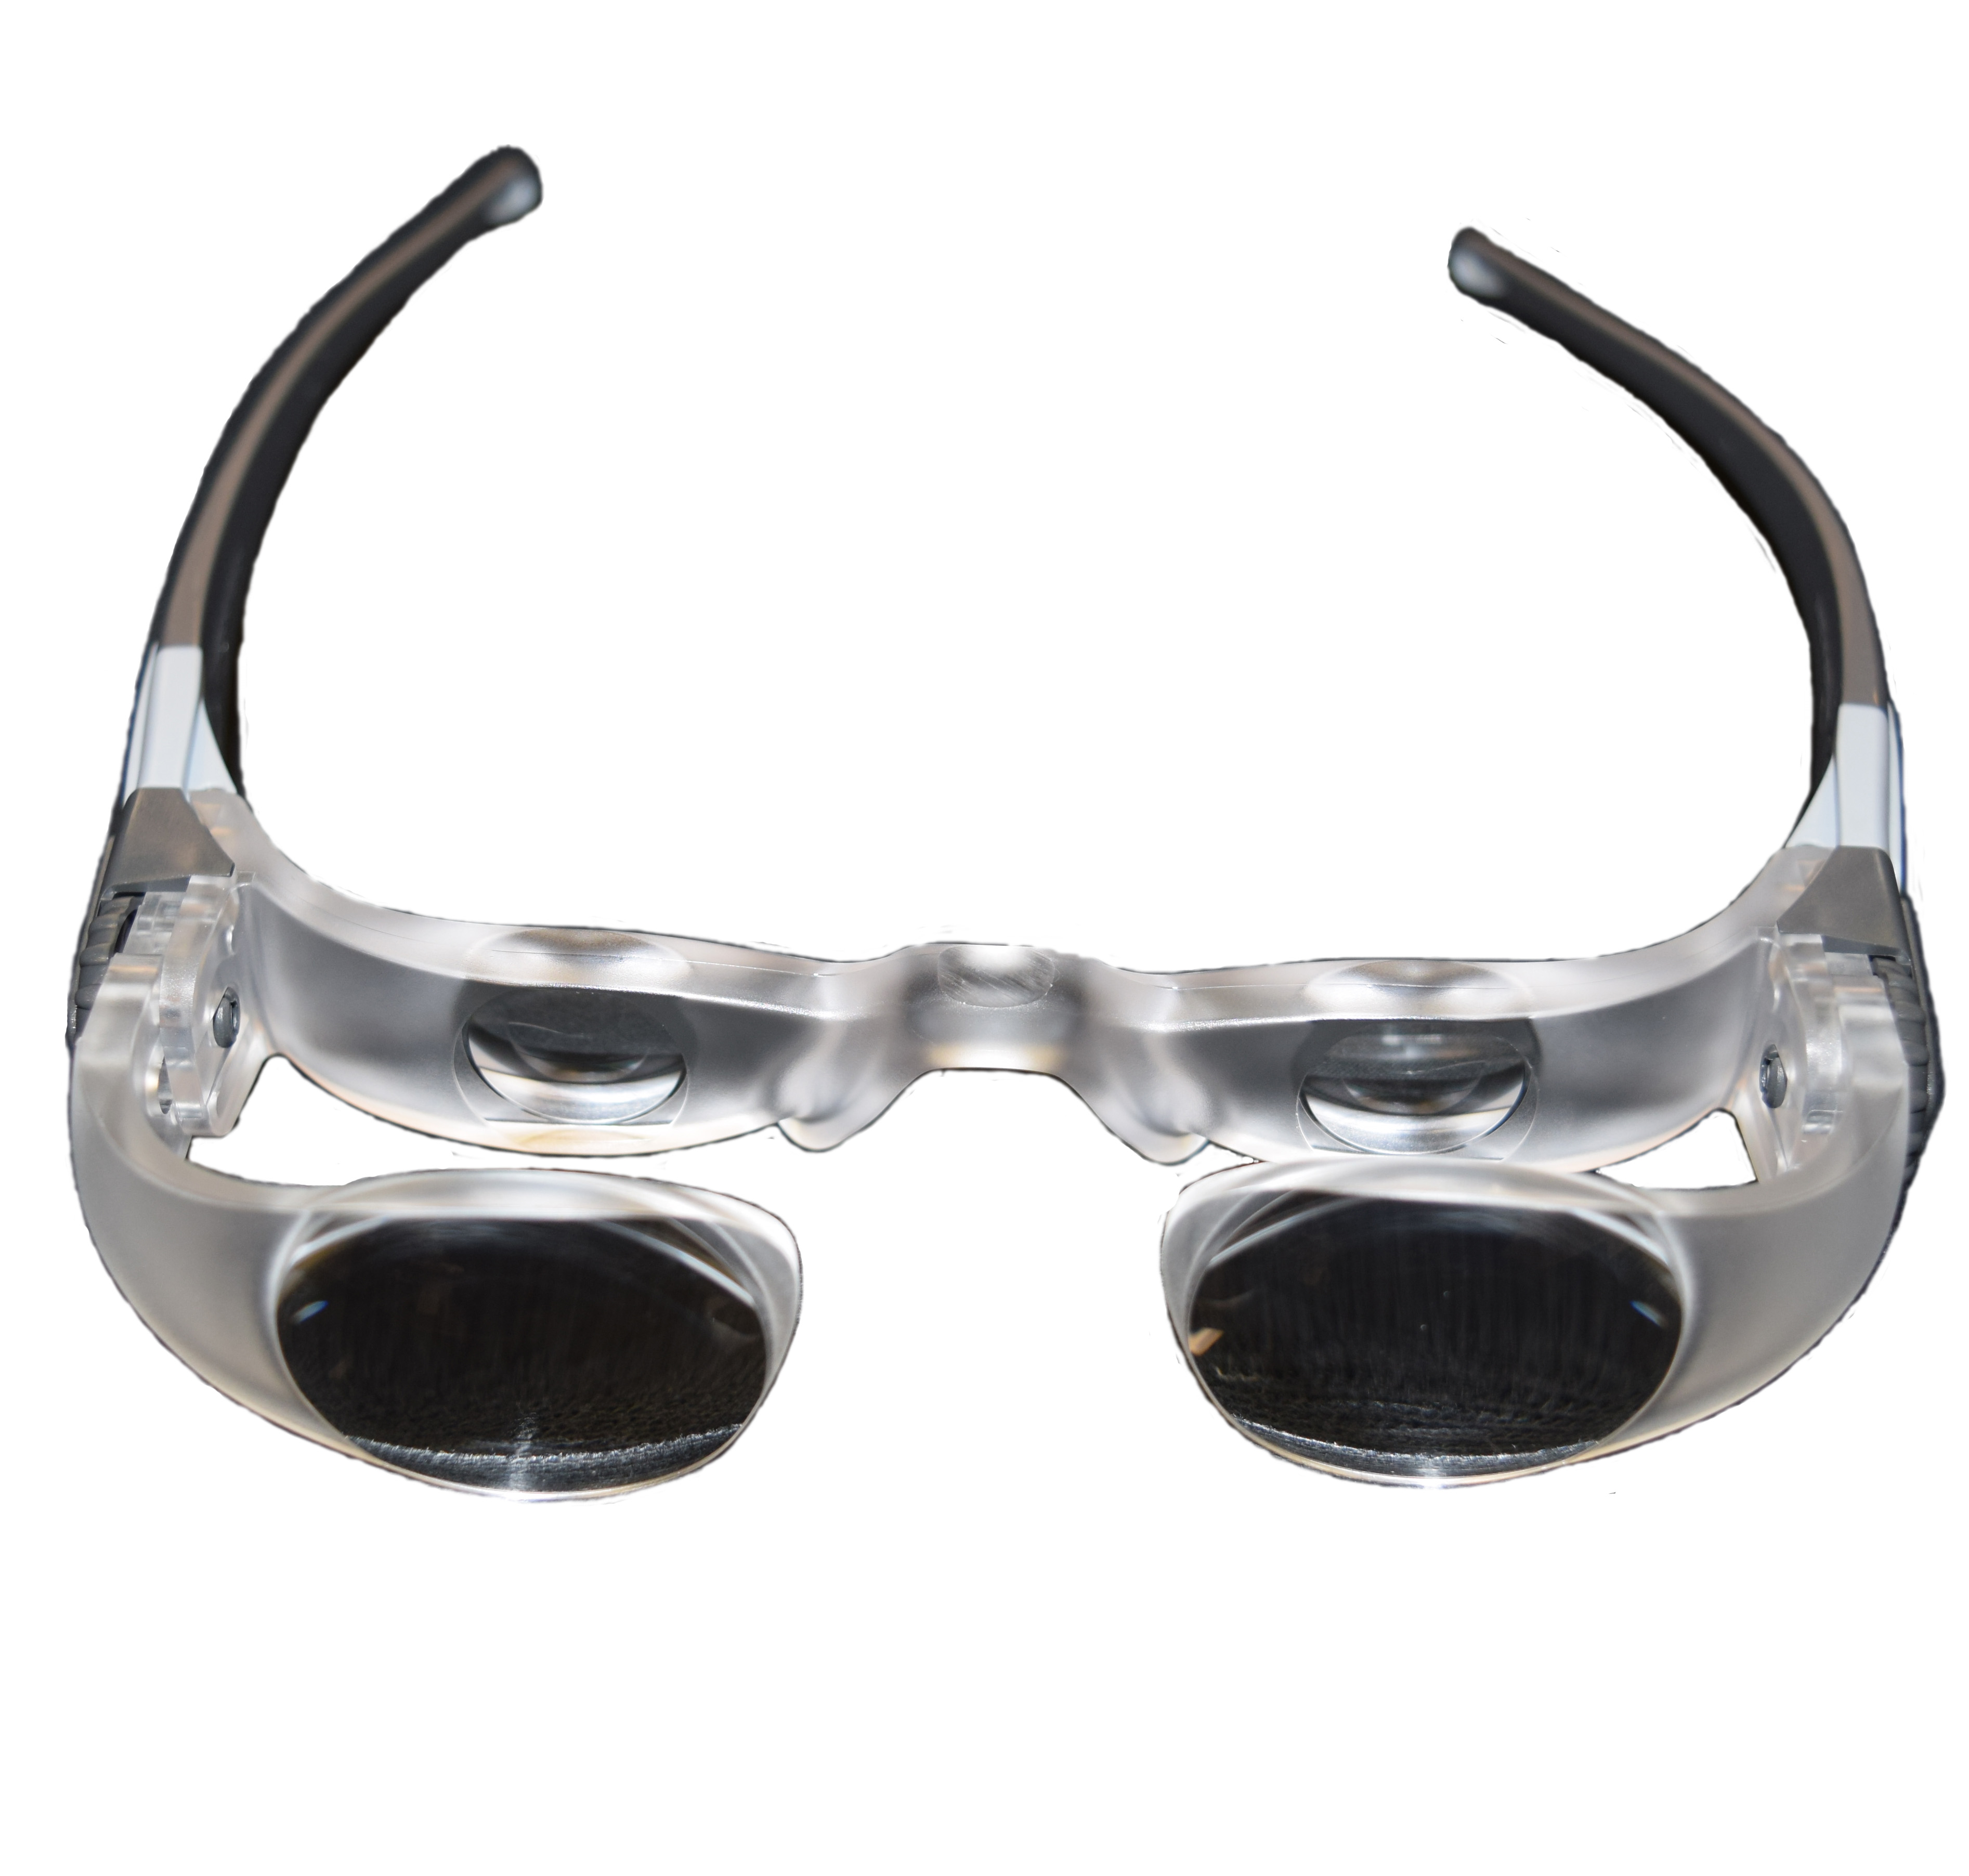 MAXTV Magnifying Glasses for TV